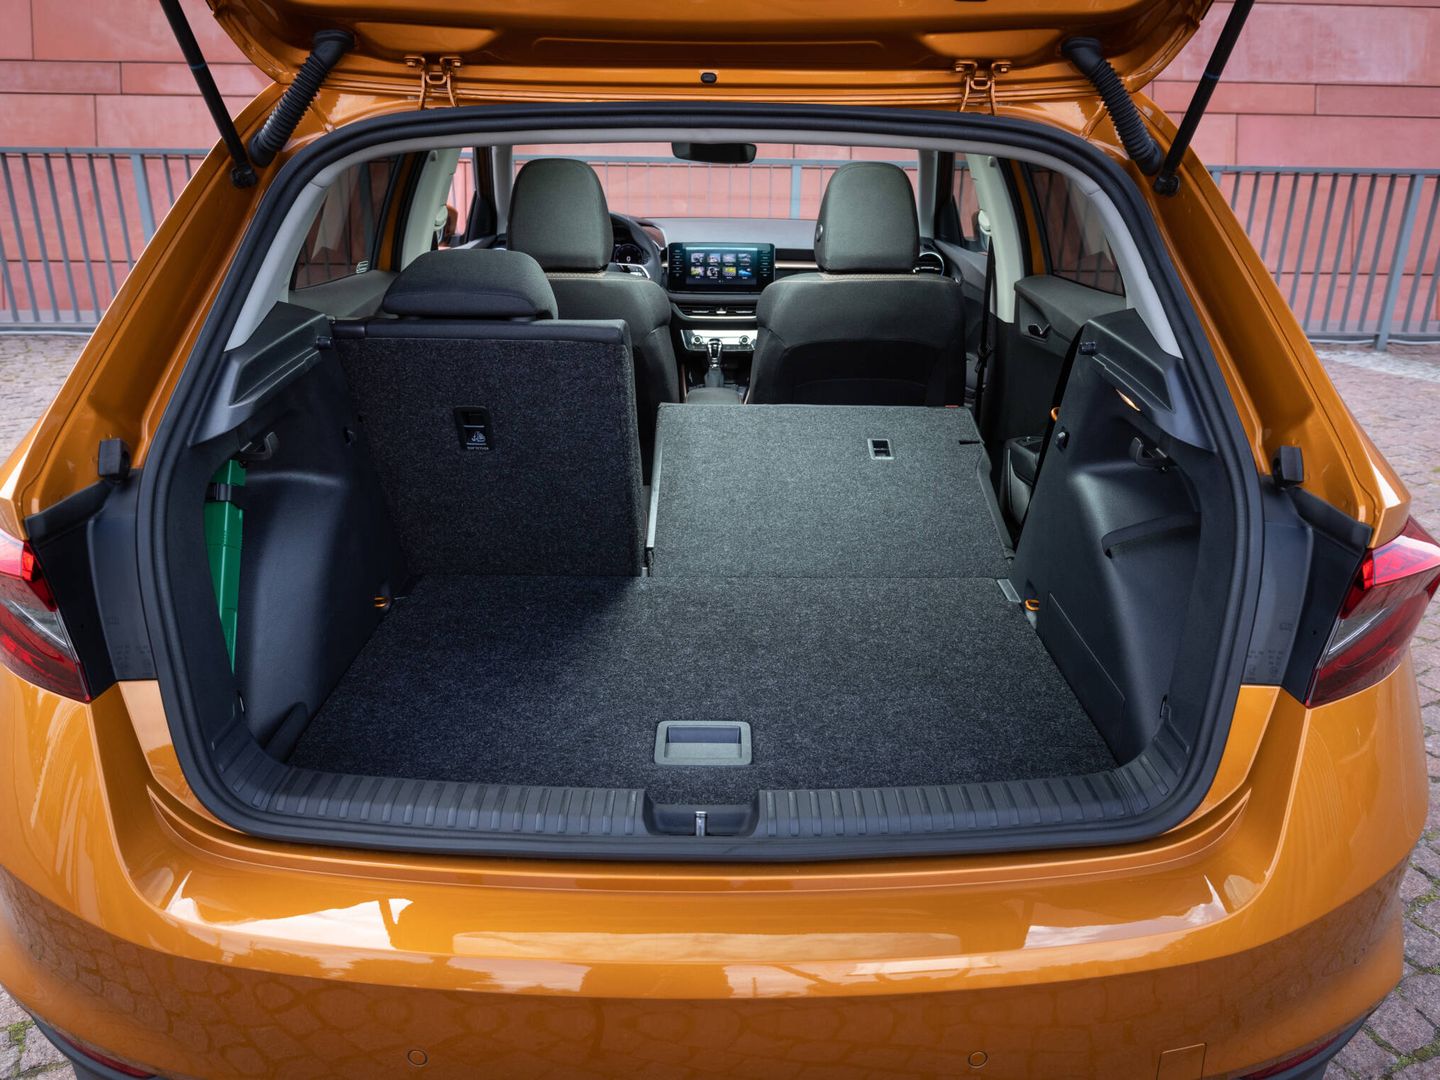 Probamos el nuevo Seat Ibiza, el utilitario que saca lo mejor del interior